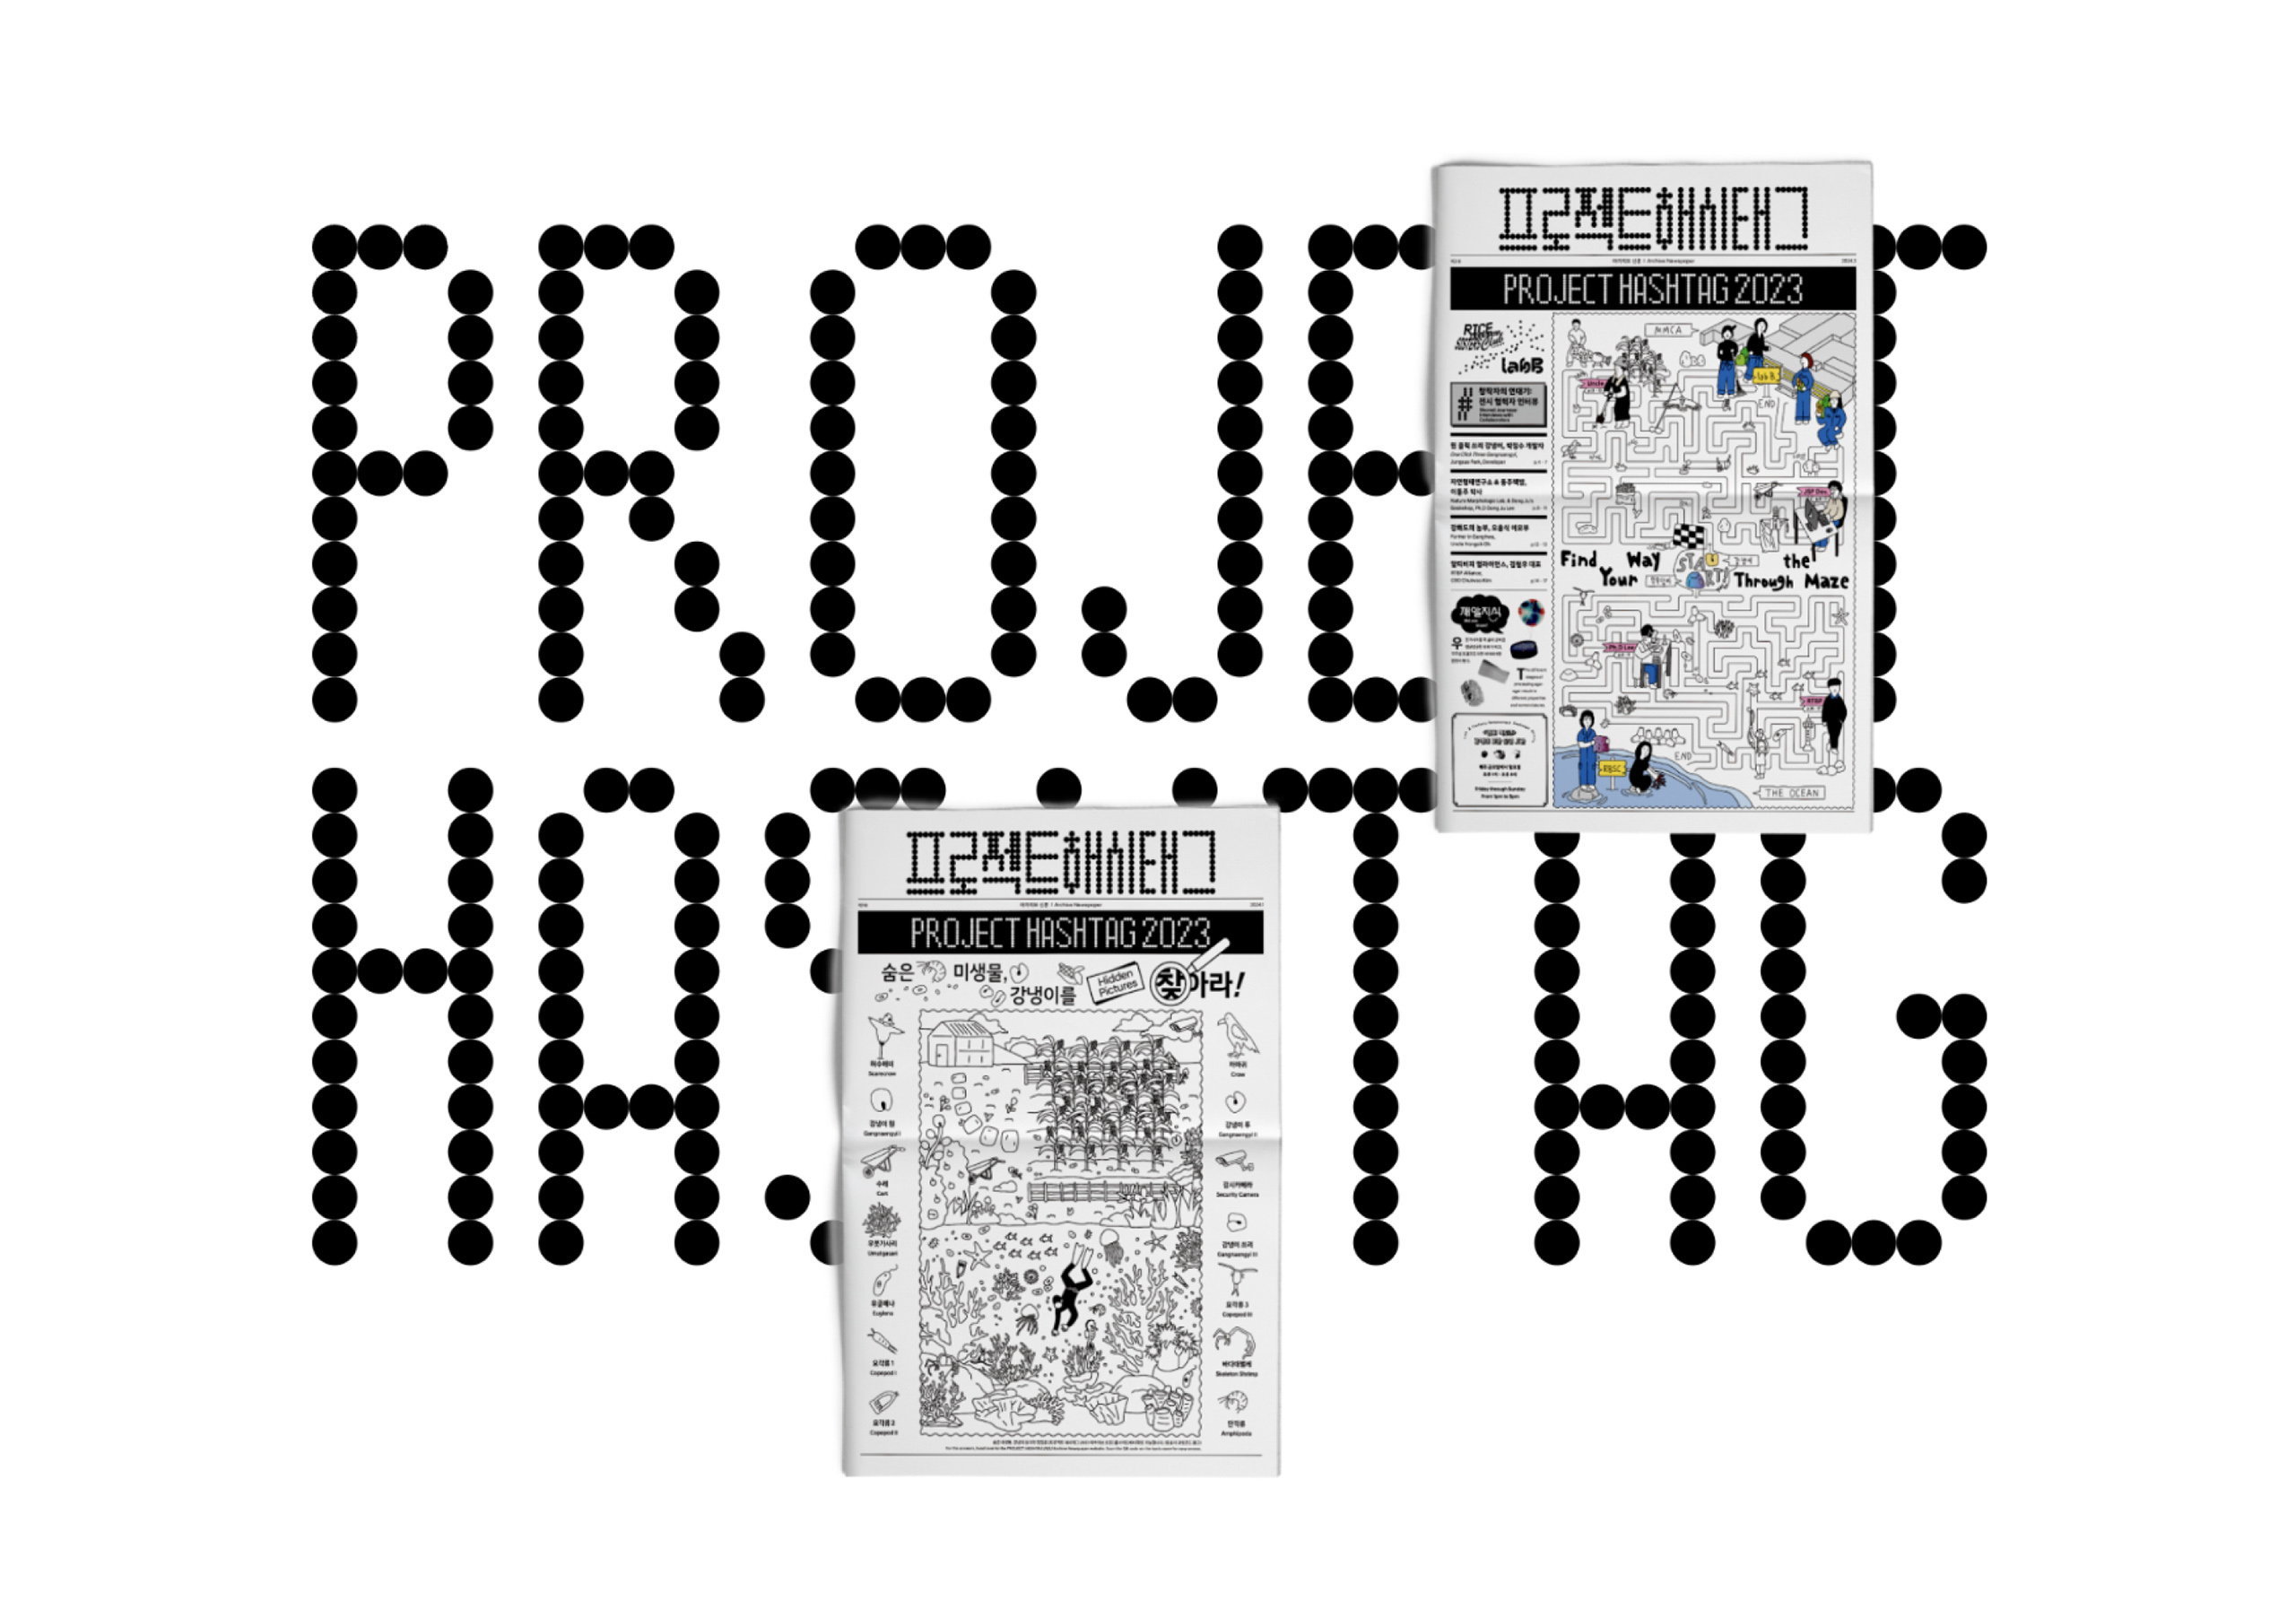 20_프로젝트 해시태그_project hashtag